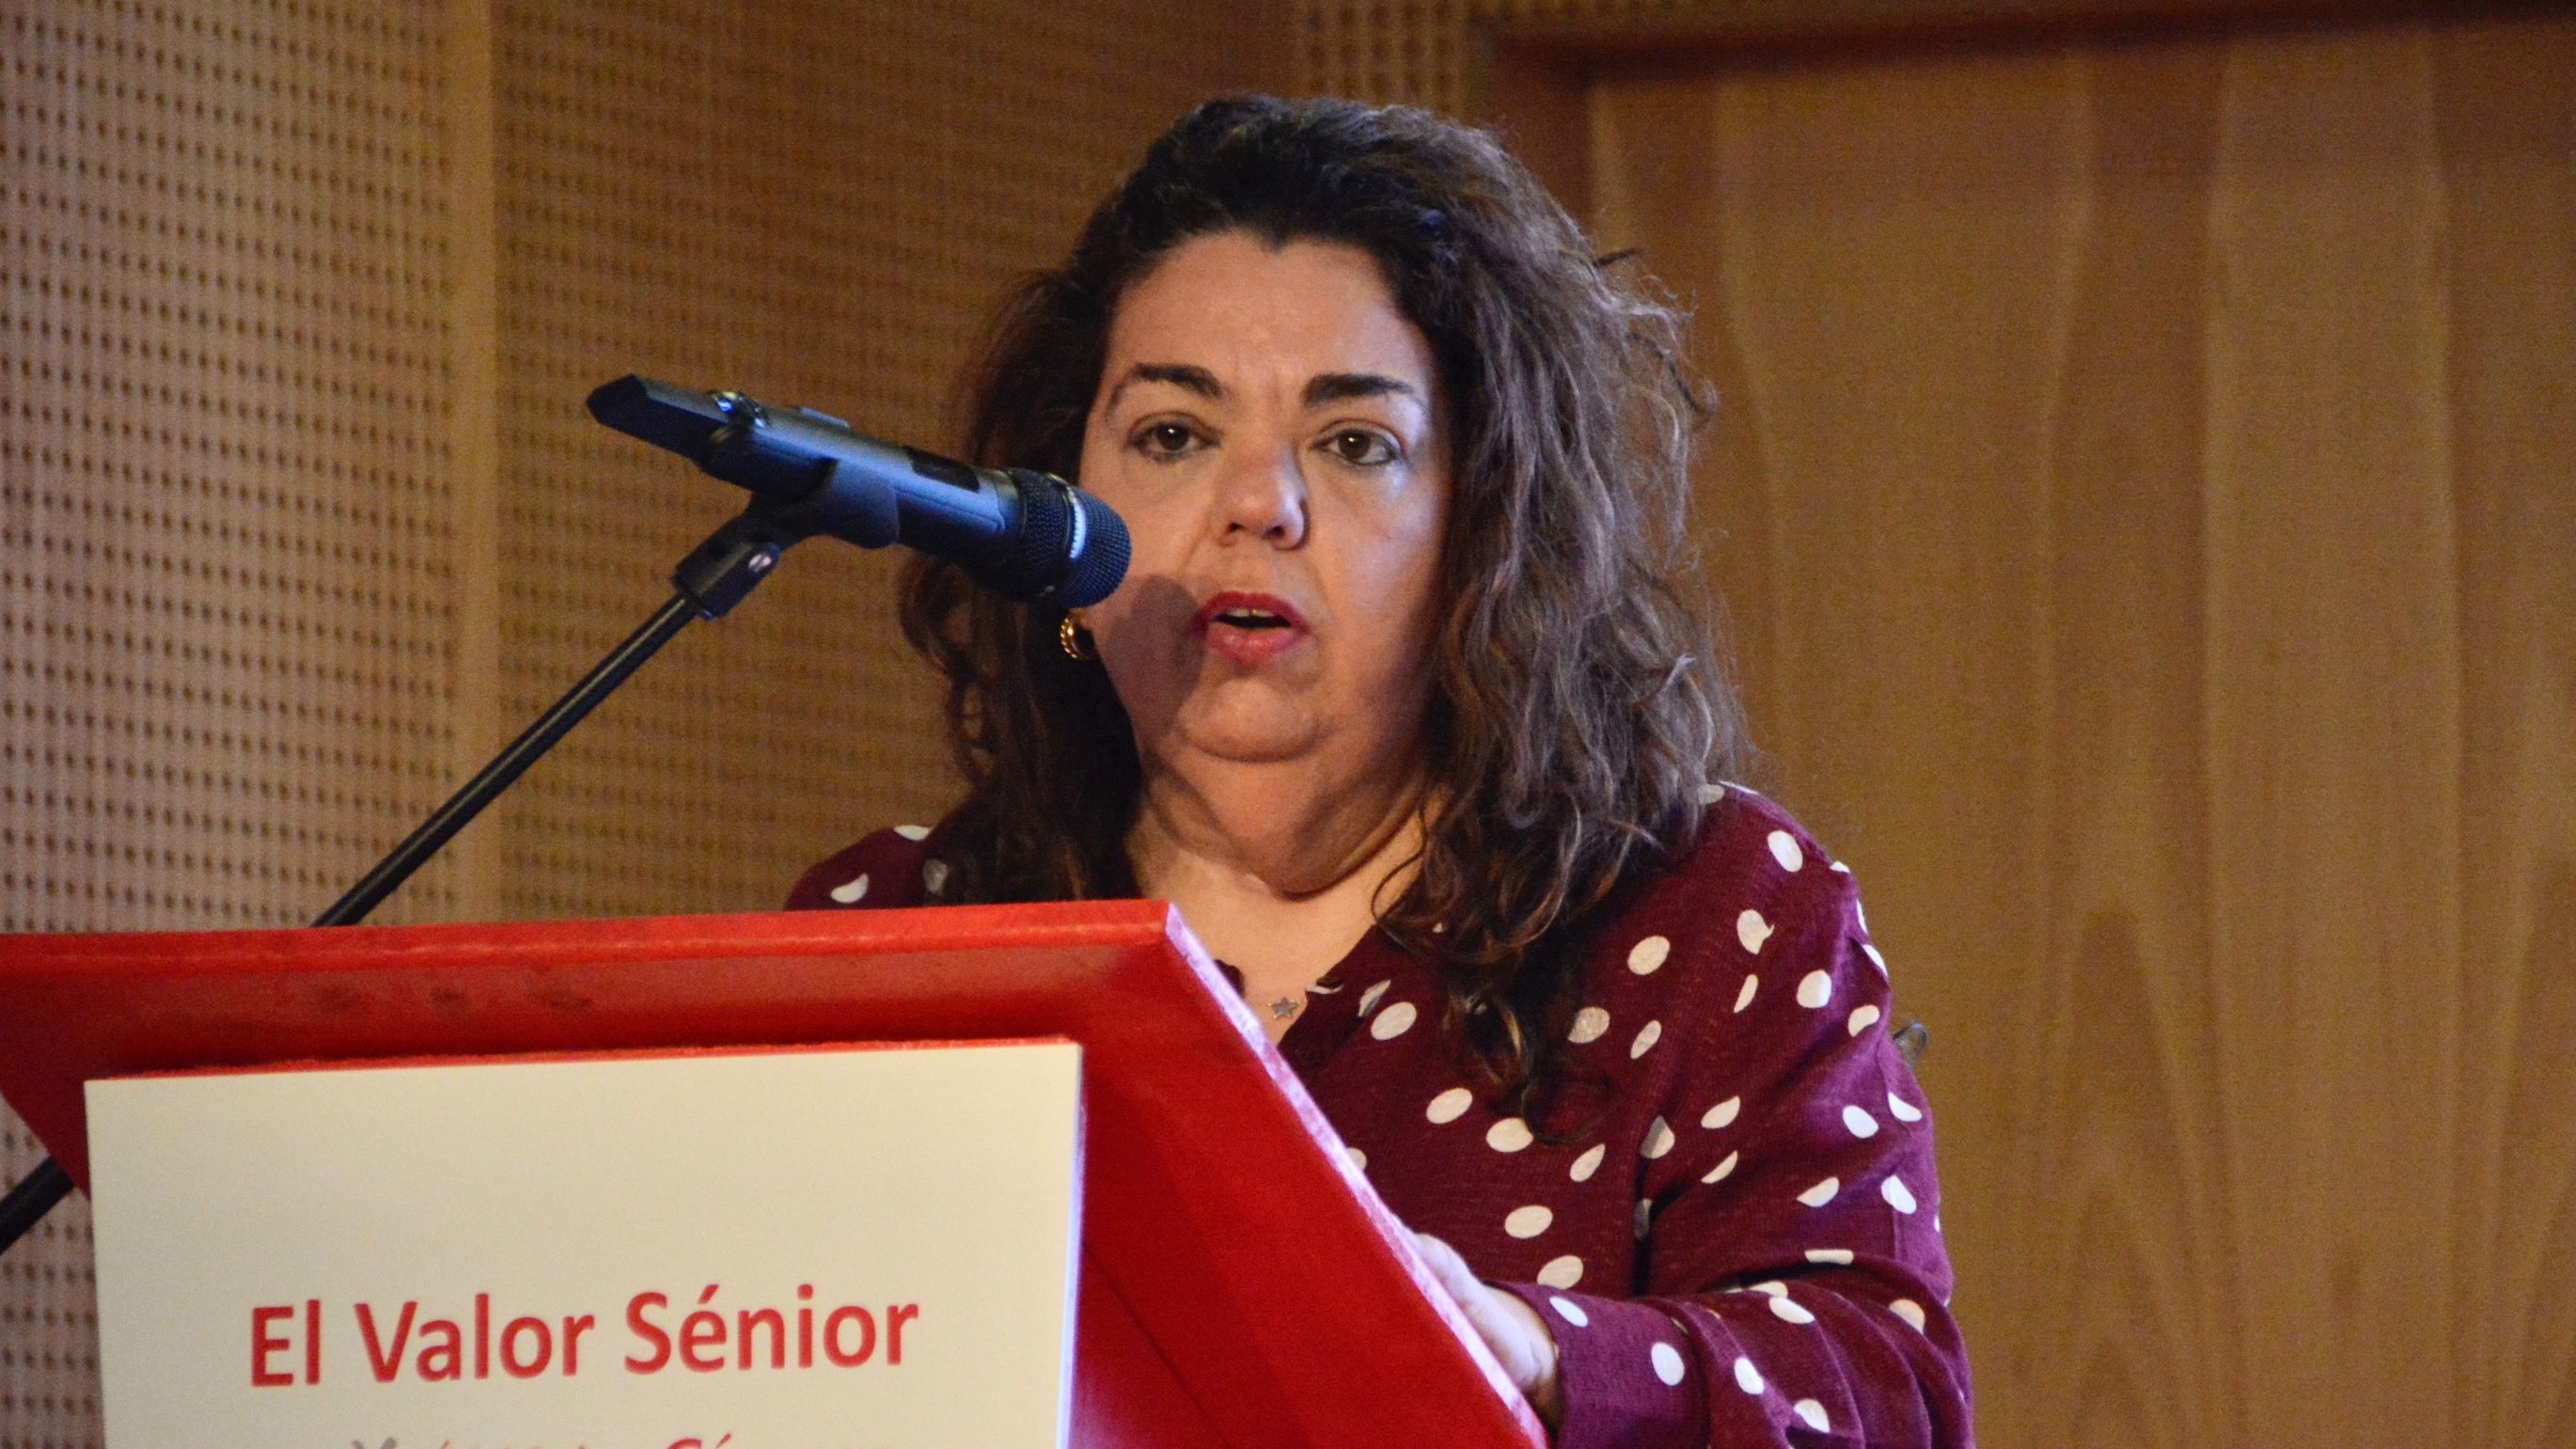 Cristina Pérez Valero: "No se puede desperdiciar el talento sénior, ni discriminar por edad"